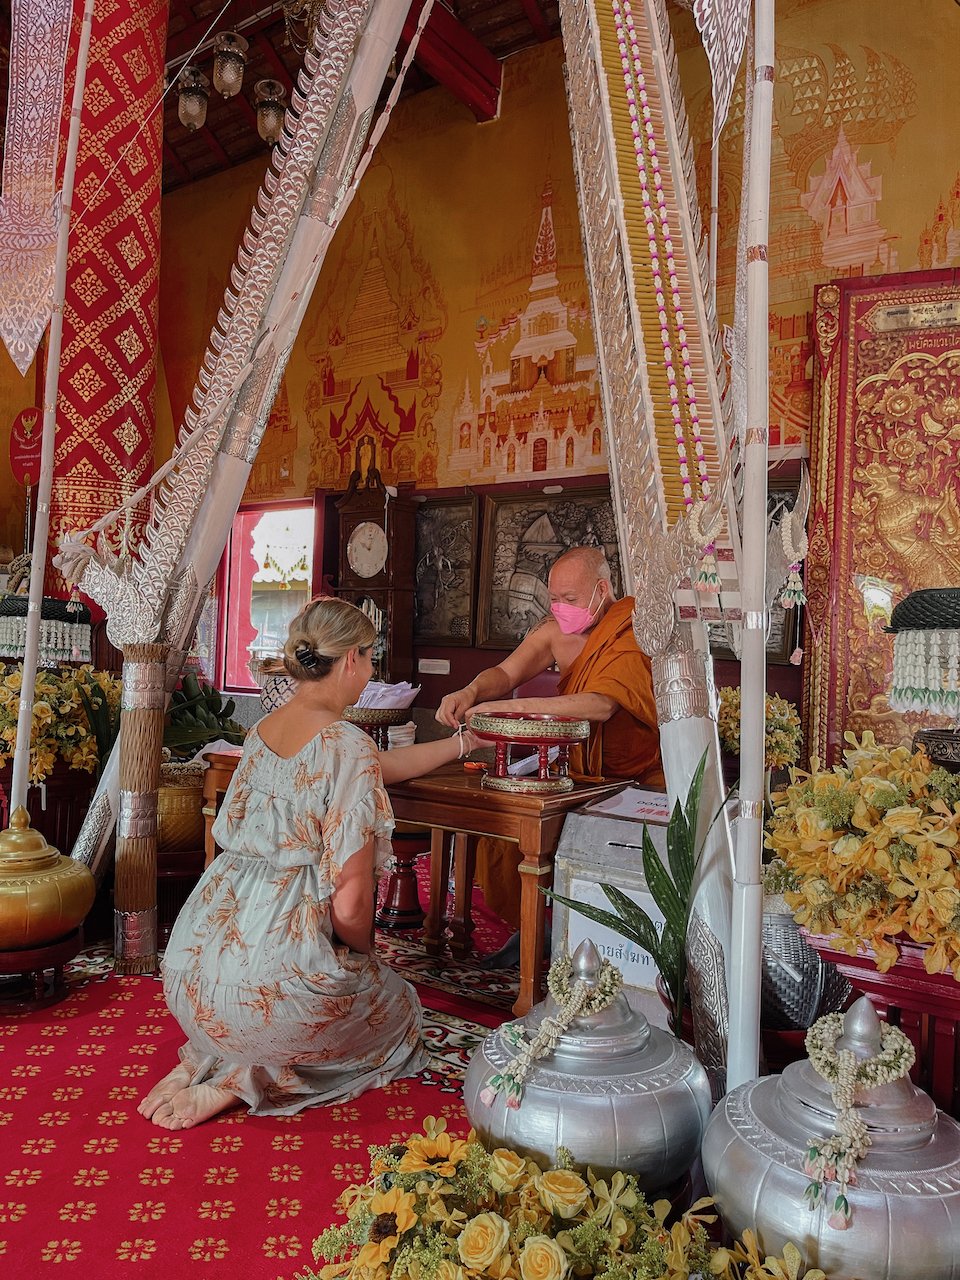 Bénédiction par un moine à Wat Sri Suphan - Chiang Mai - Nord de la Thaïlande